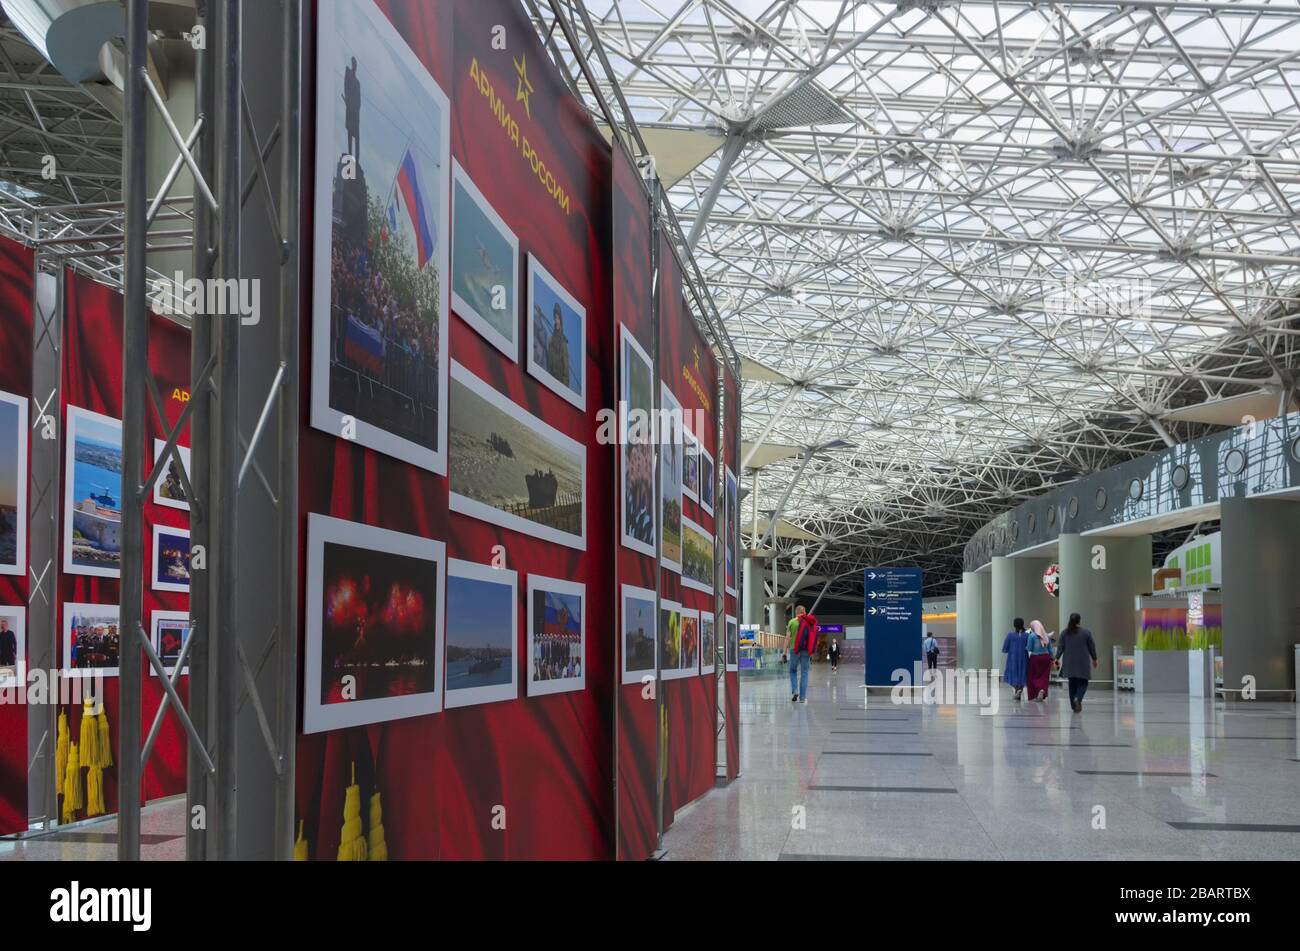 Aéroport international de Vnukovo, Moscou, Russie - 21 mai 2019: Exposition photo "Armée russe" consacrée à l'histoire de l'armée russe et soviétique Banque D'Images